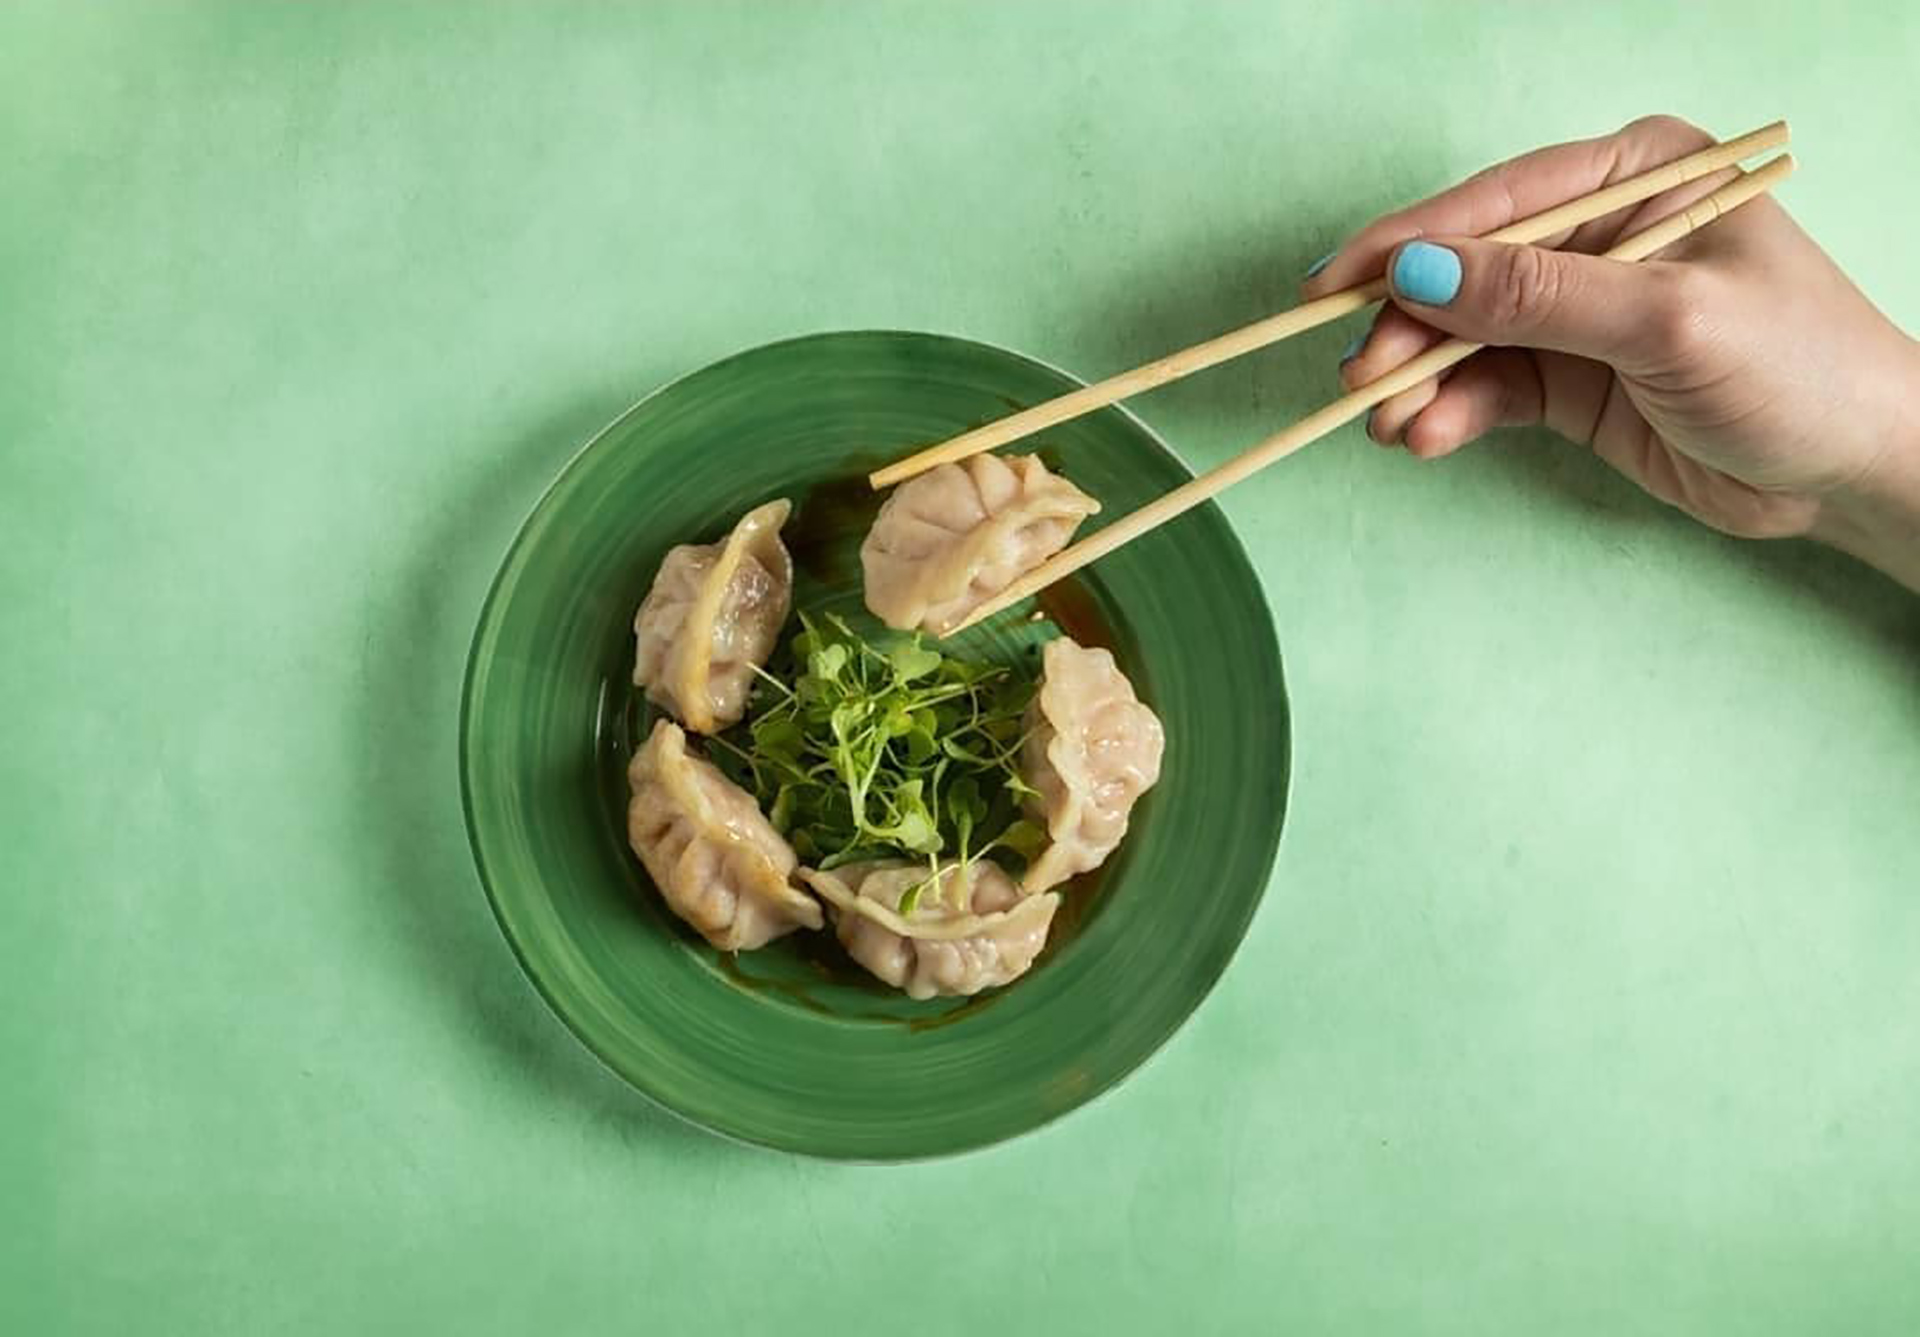 Los dumplings son originales de China en donde tanto el producto como el momento de consumo se conoce como "Dim Sum" (pequeños bocados que tocan el corazón)